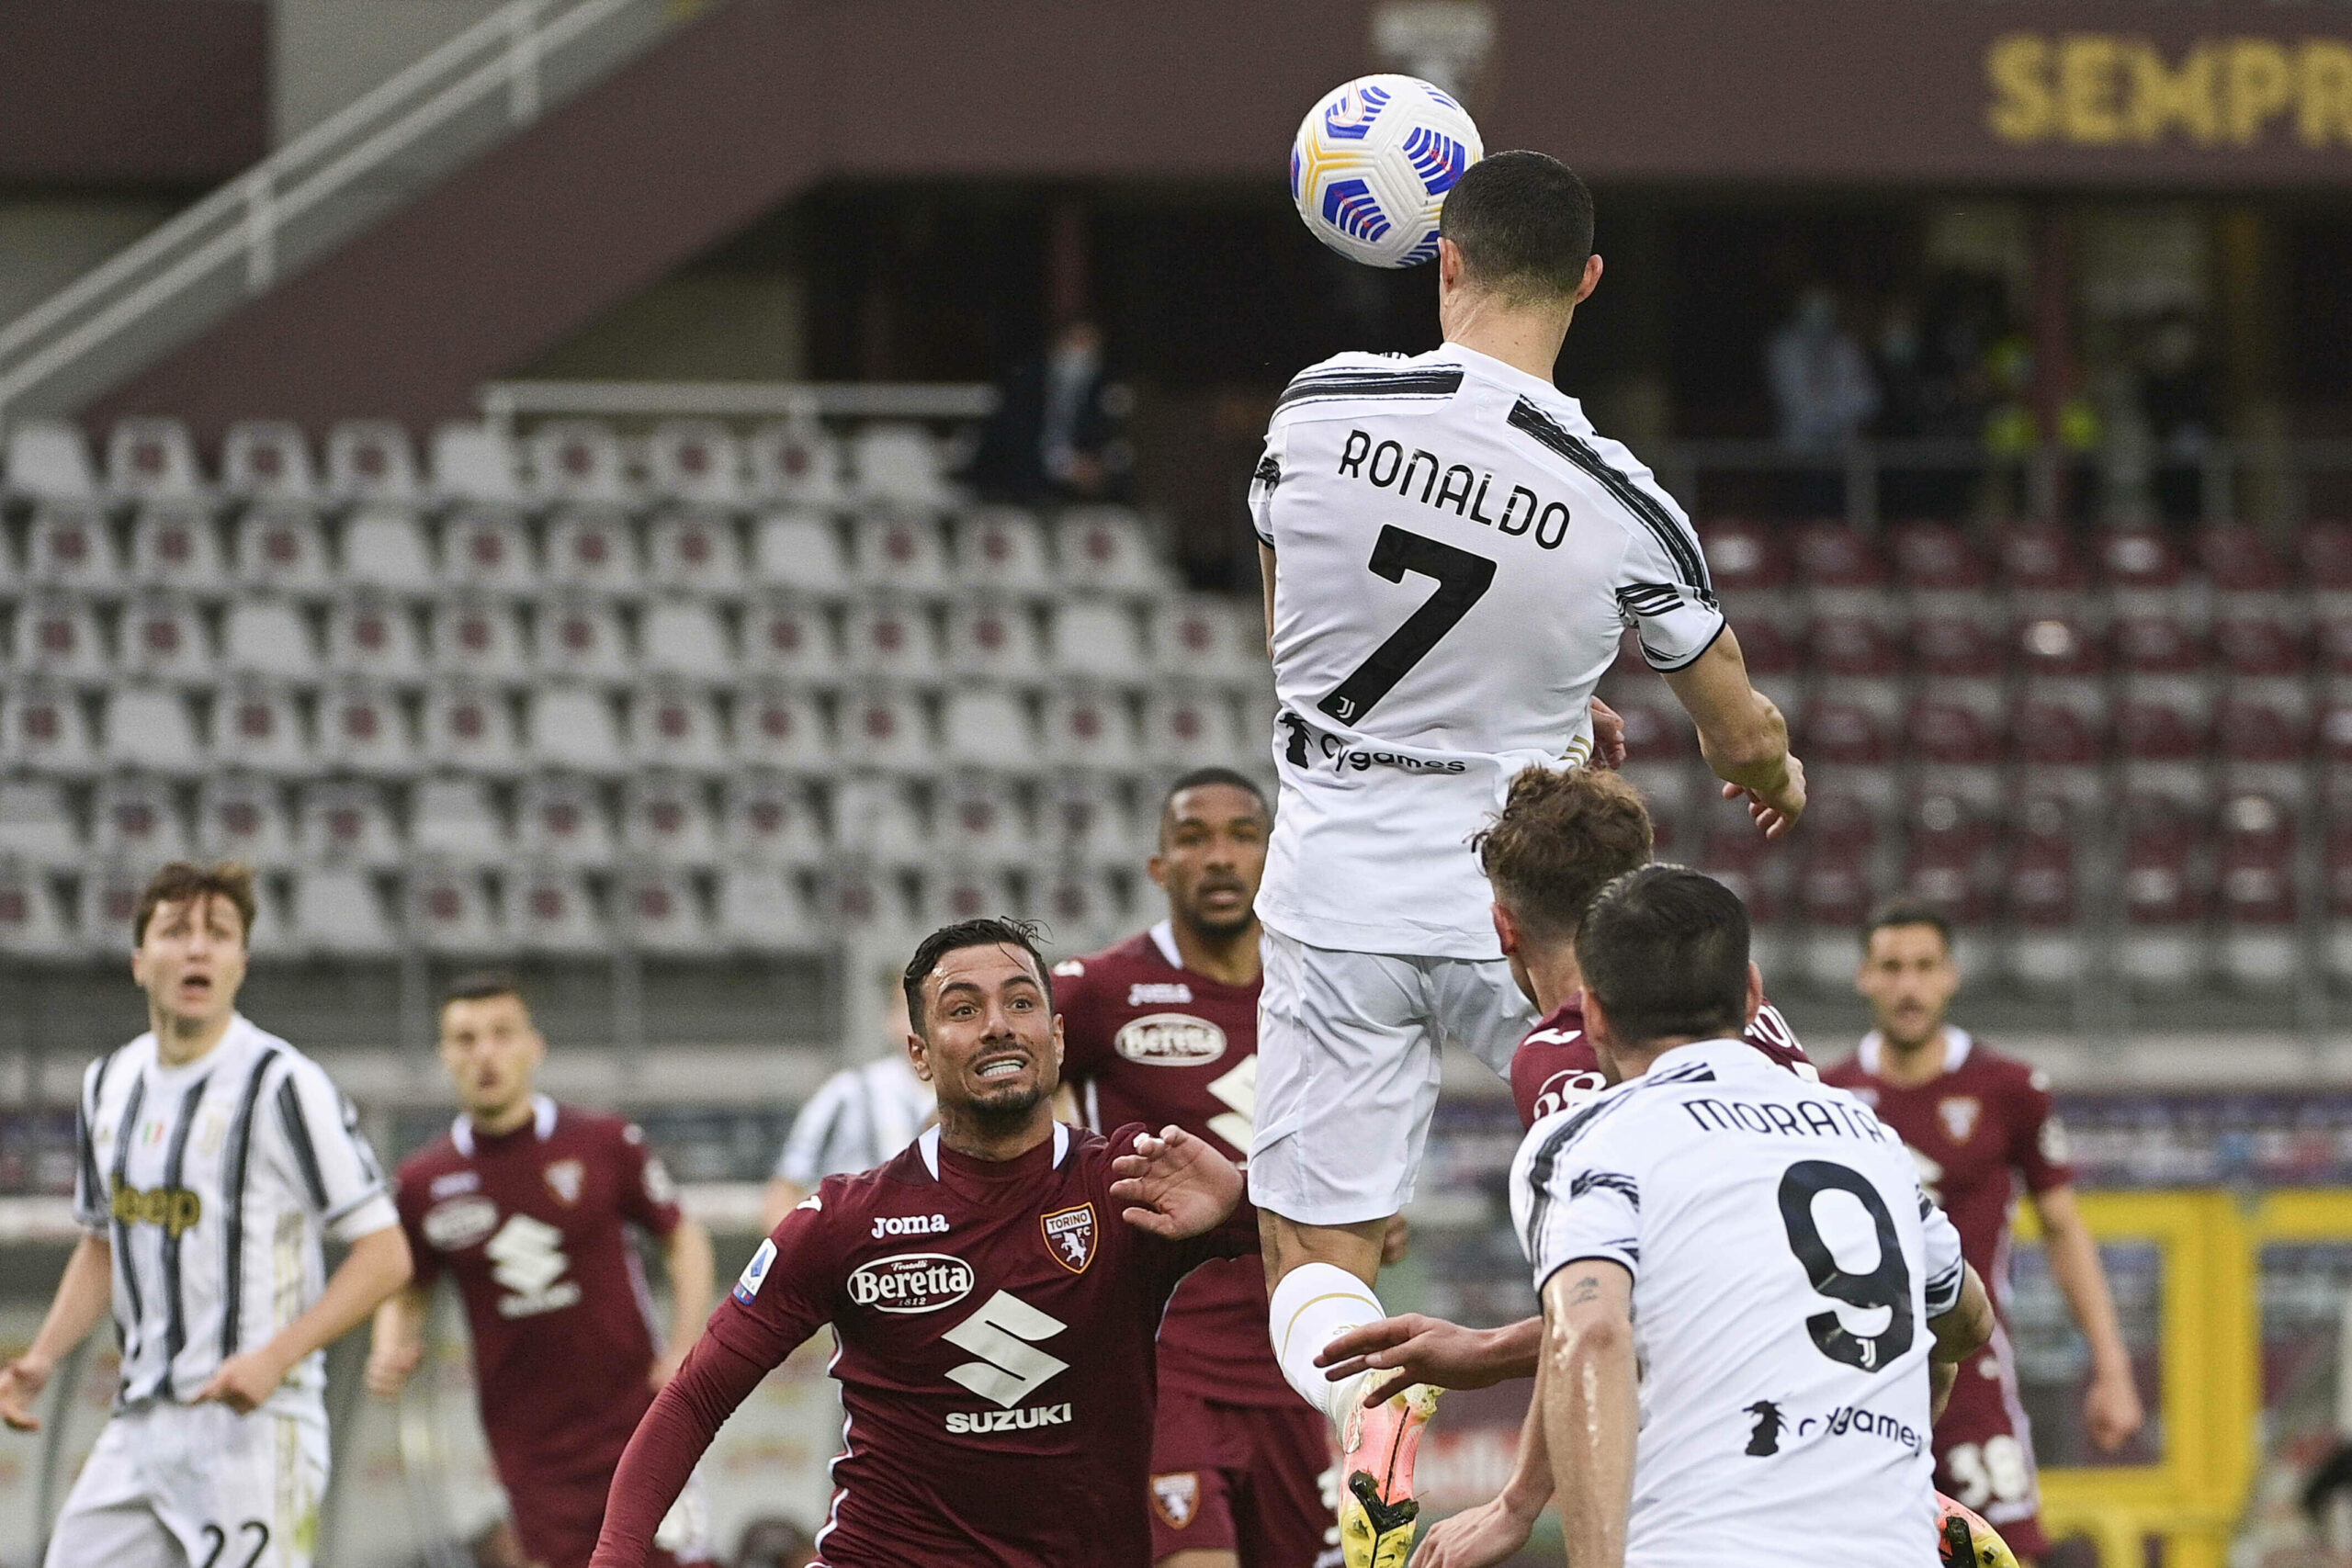 Serie A | CR7 rettet Juventus das Unentschieden im Derby gegen Torino